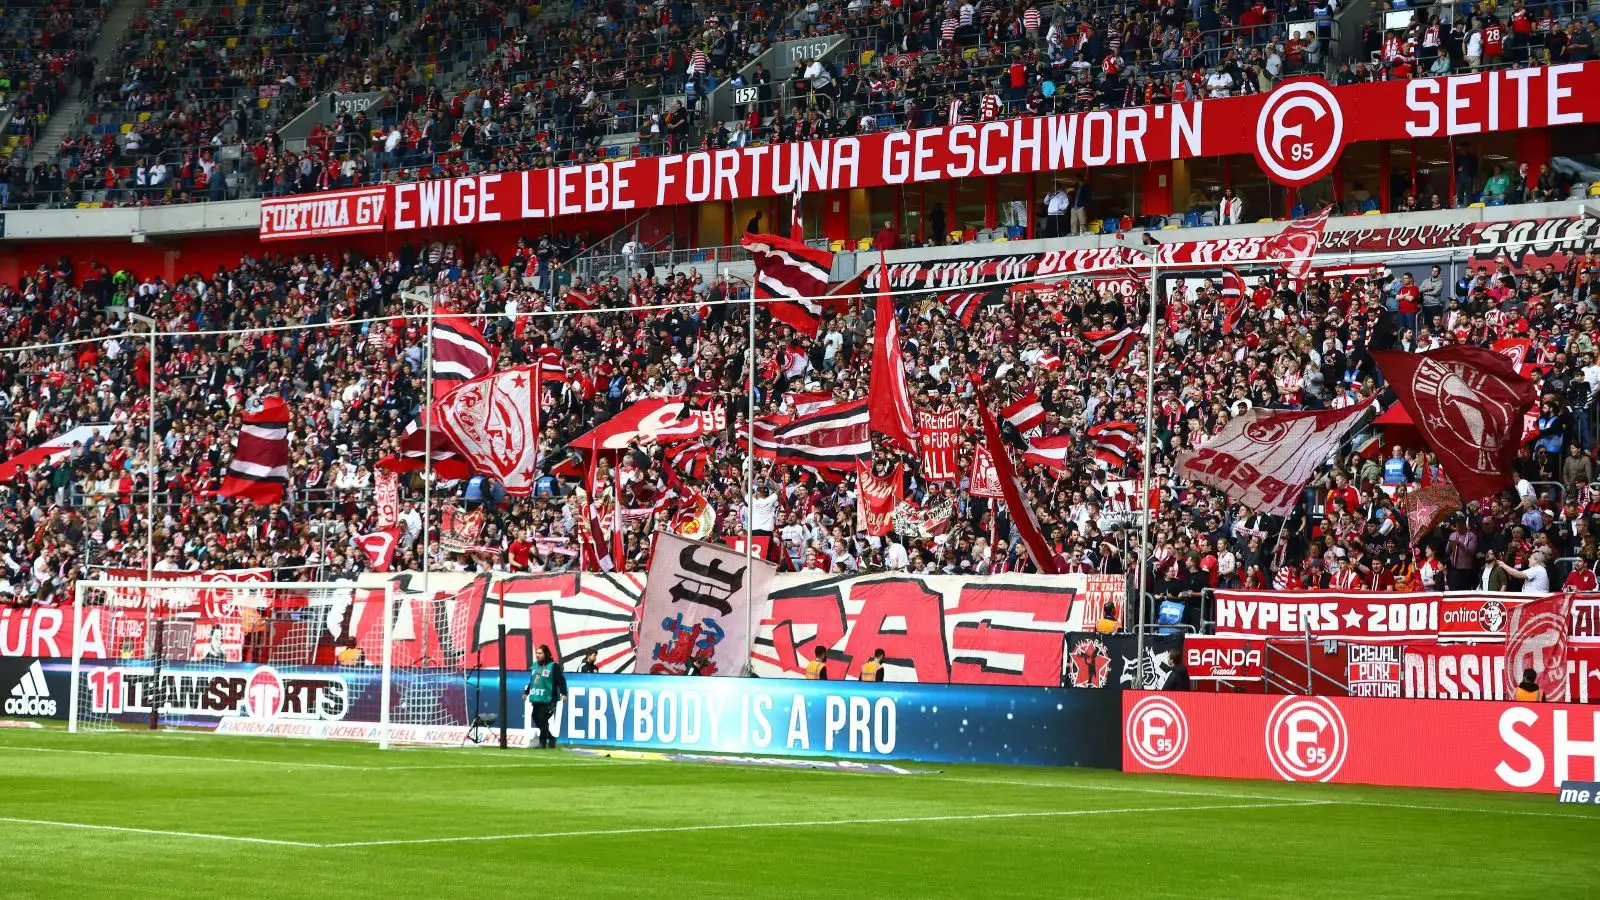 Fortuna Dusseldorf supporters